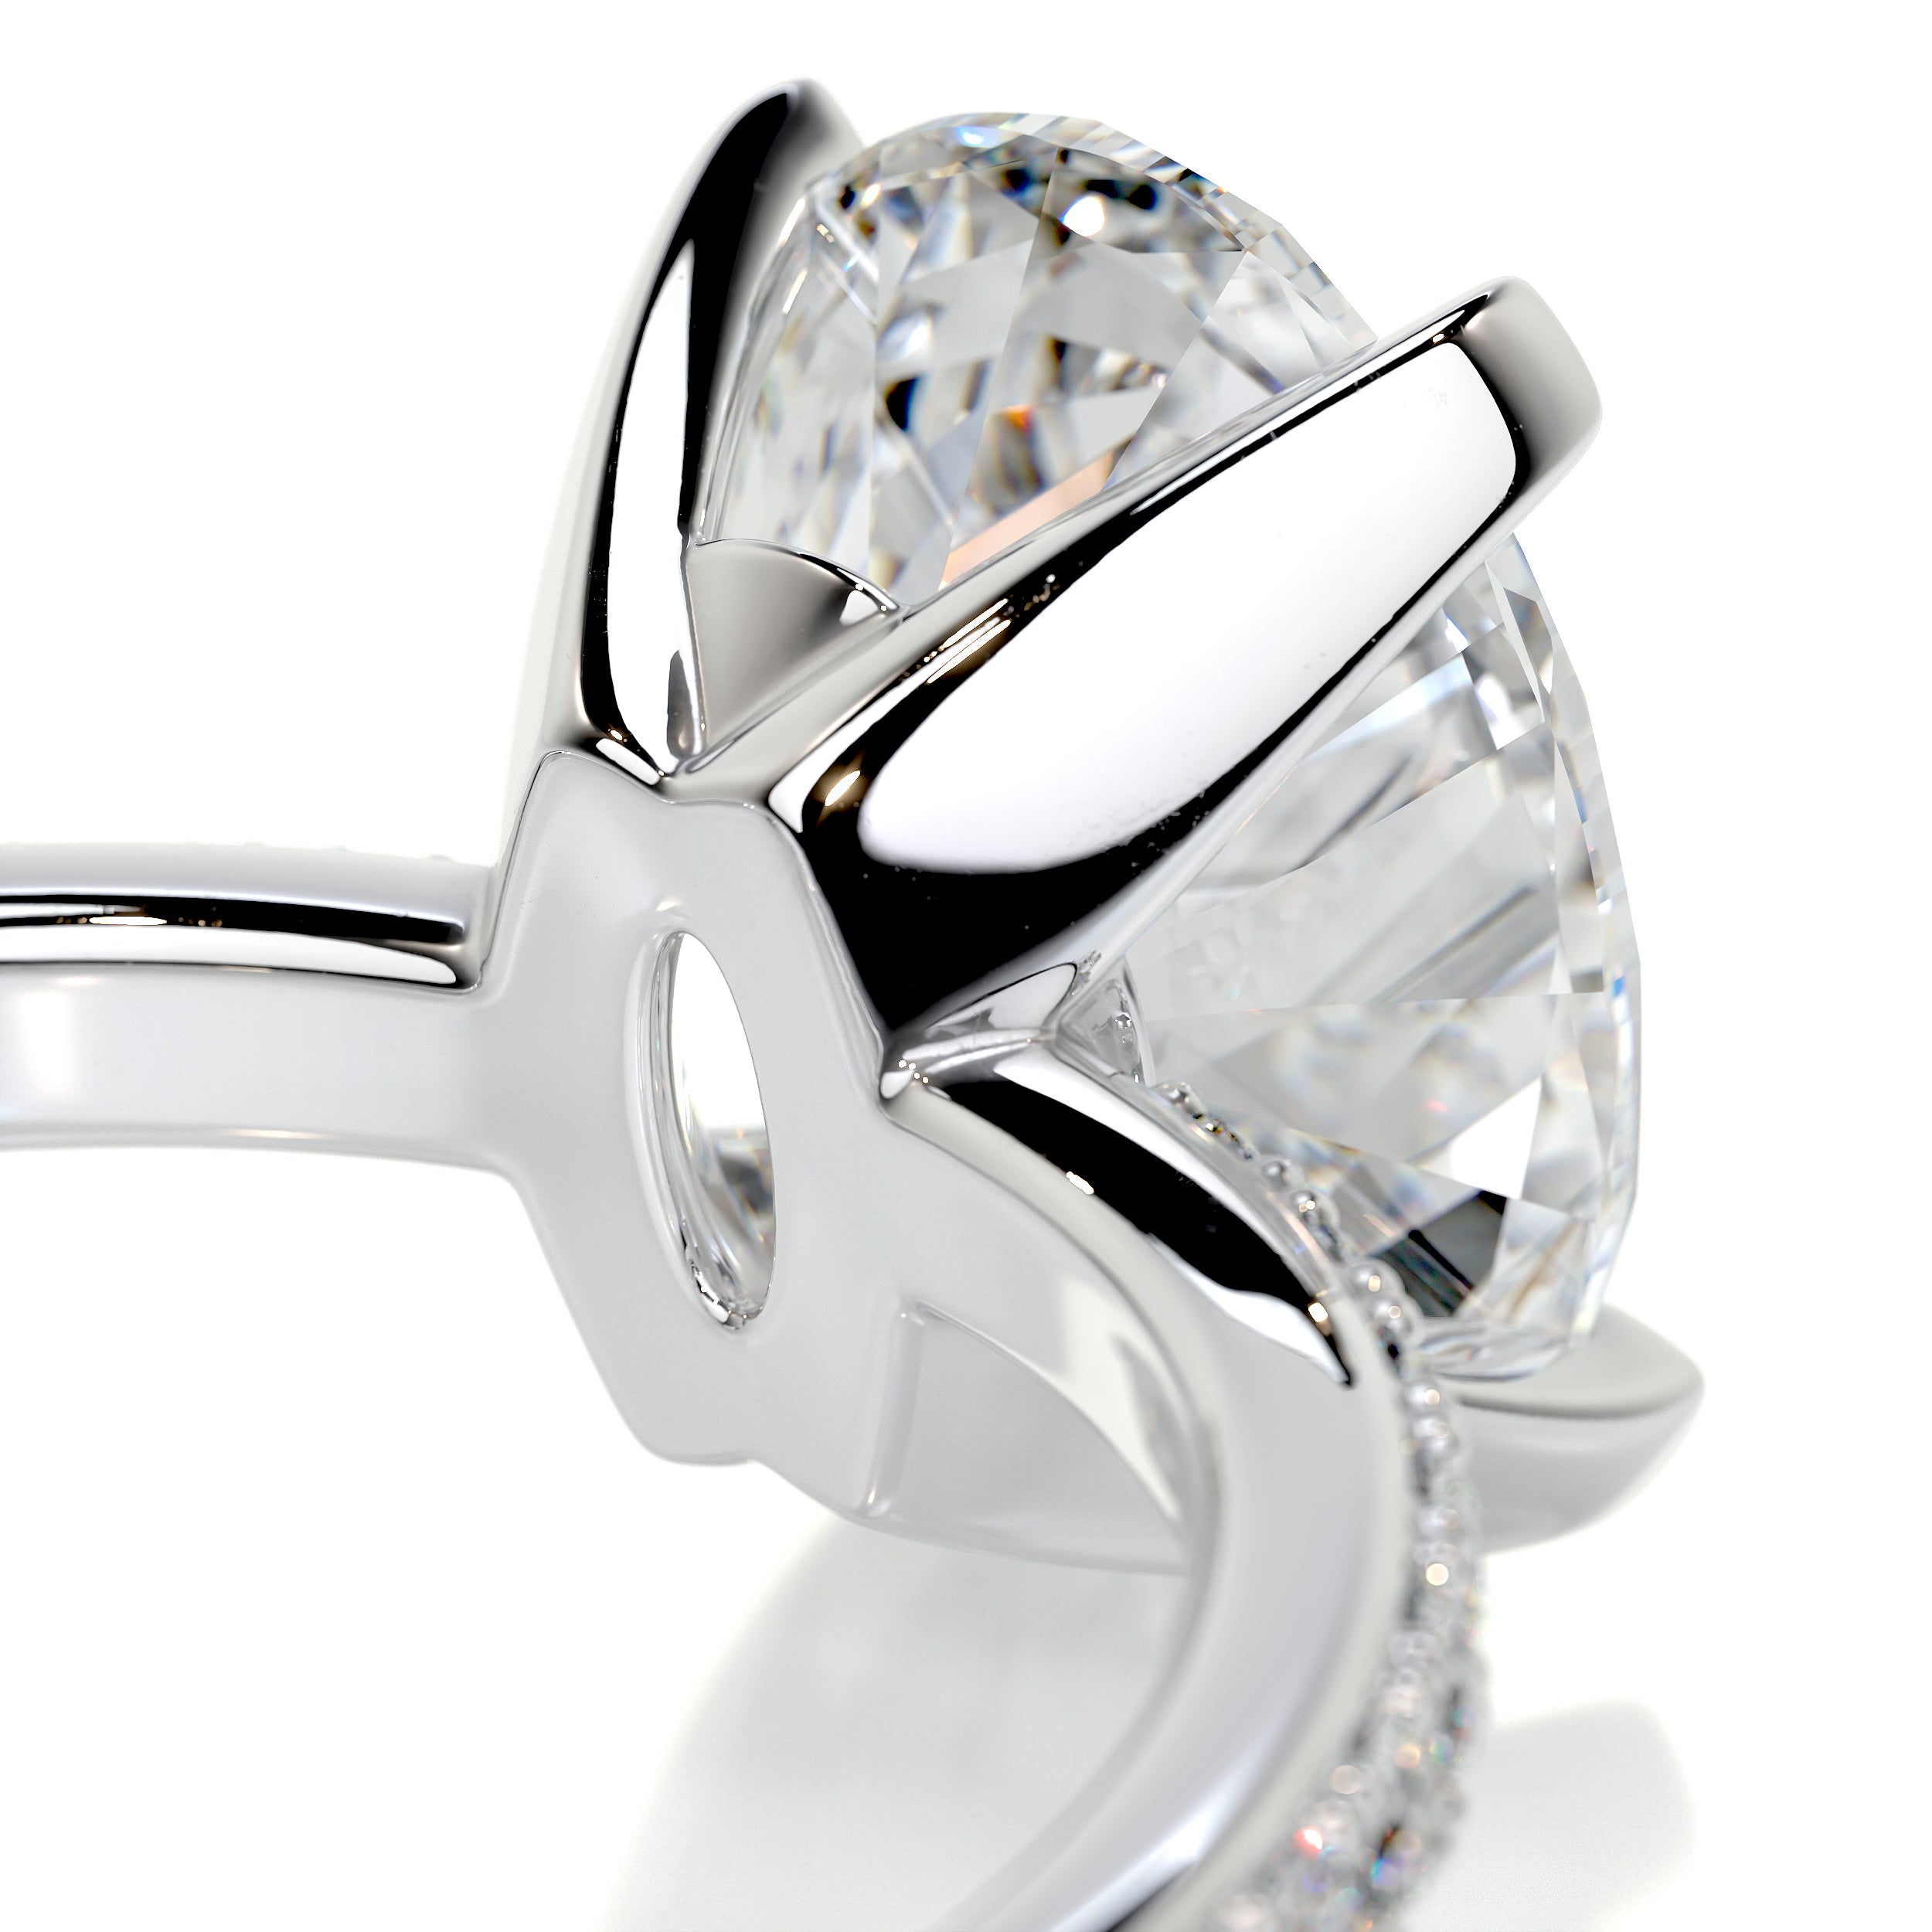 Samantha Diamond Engagement Ring   (2.15 Carat) -14K White Gold